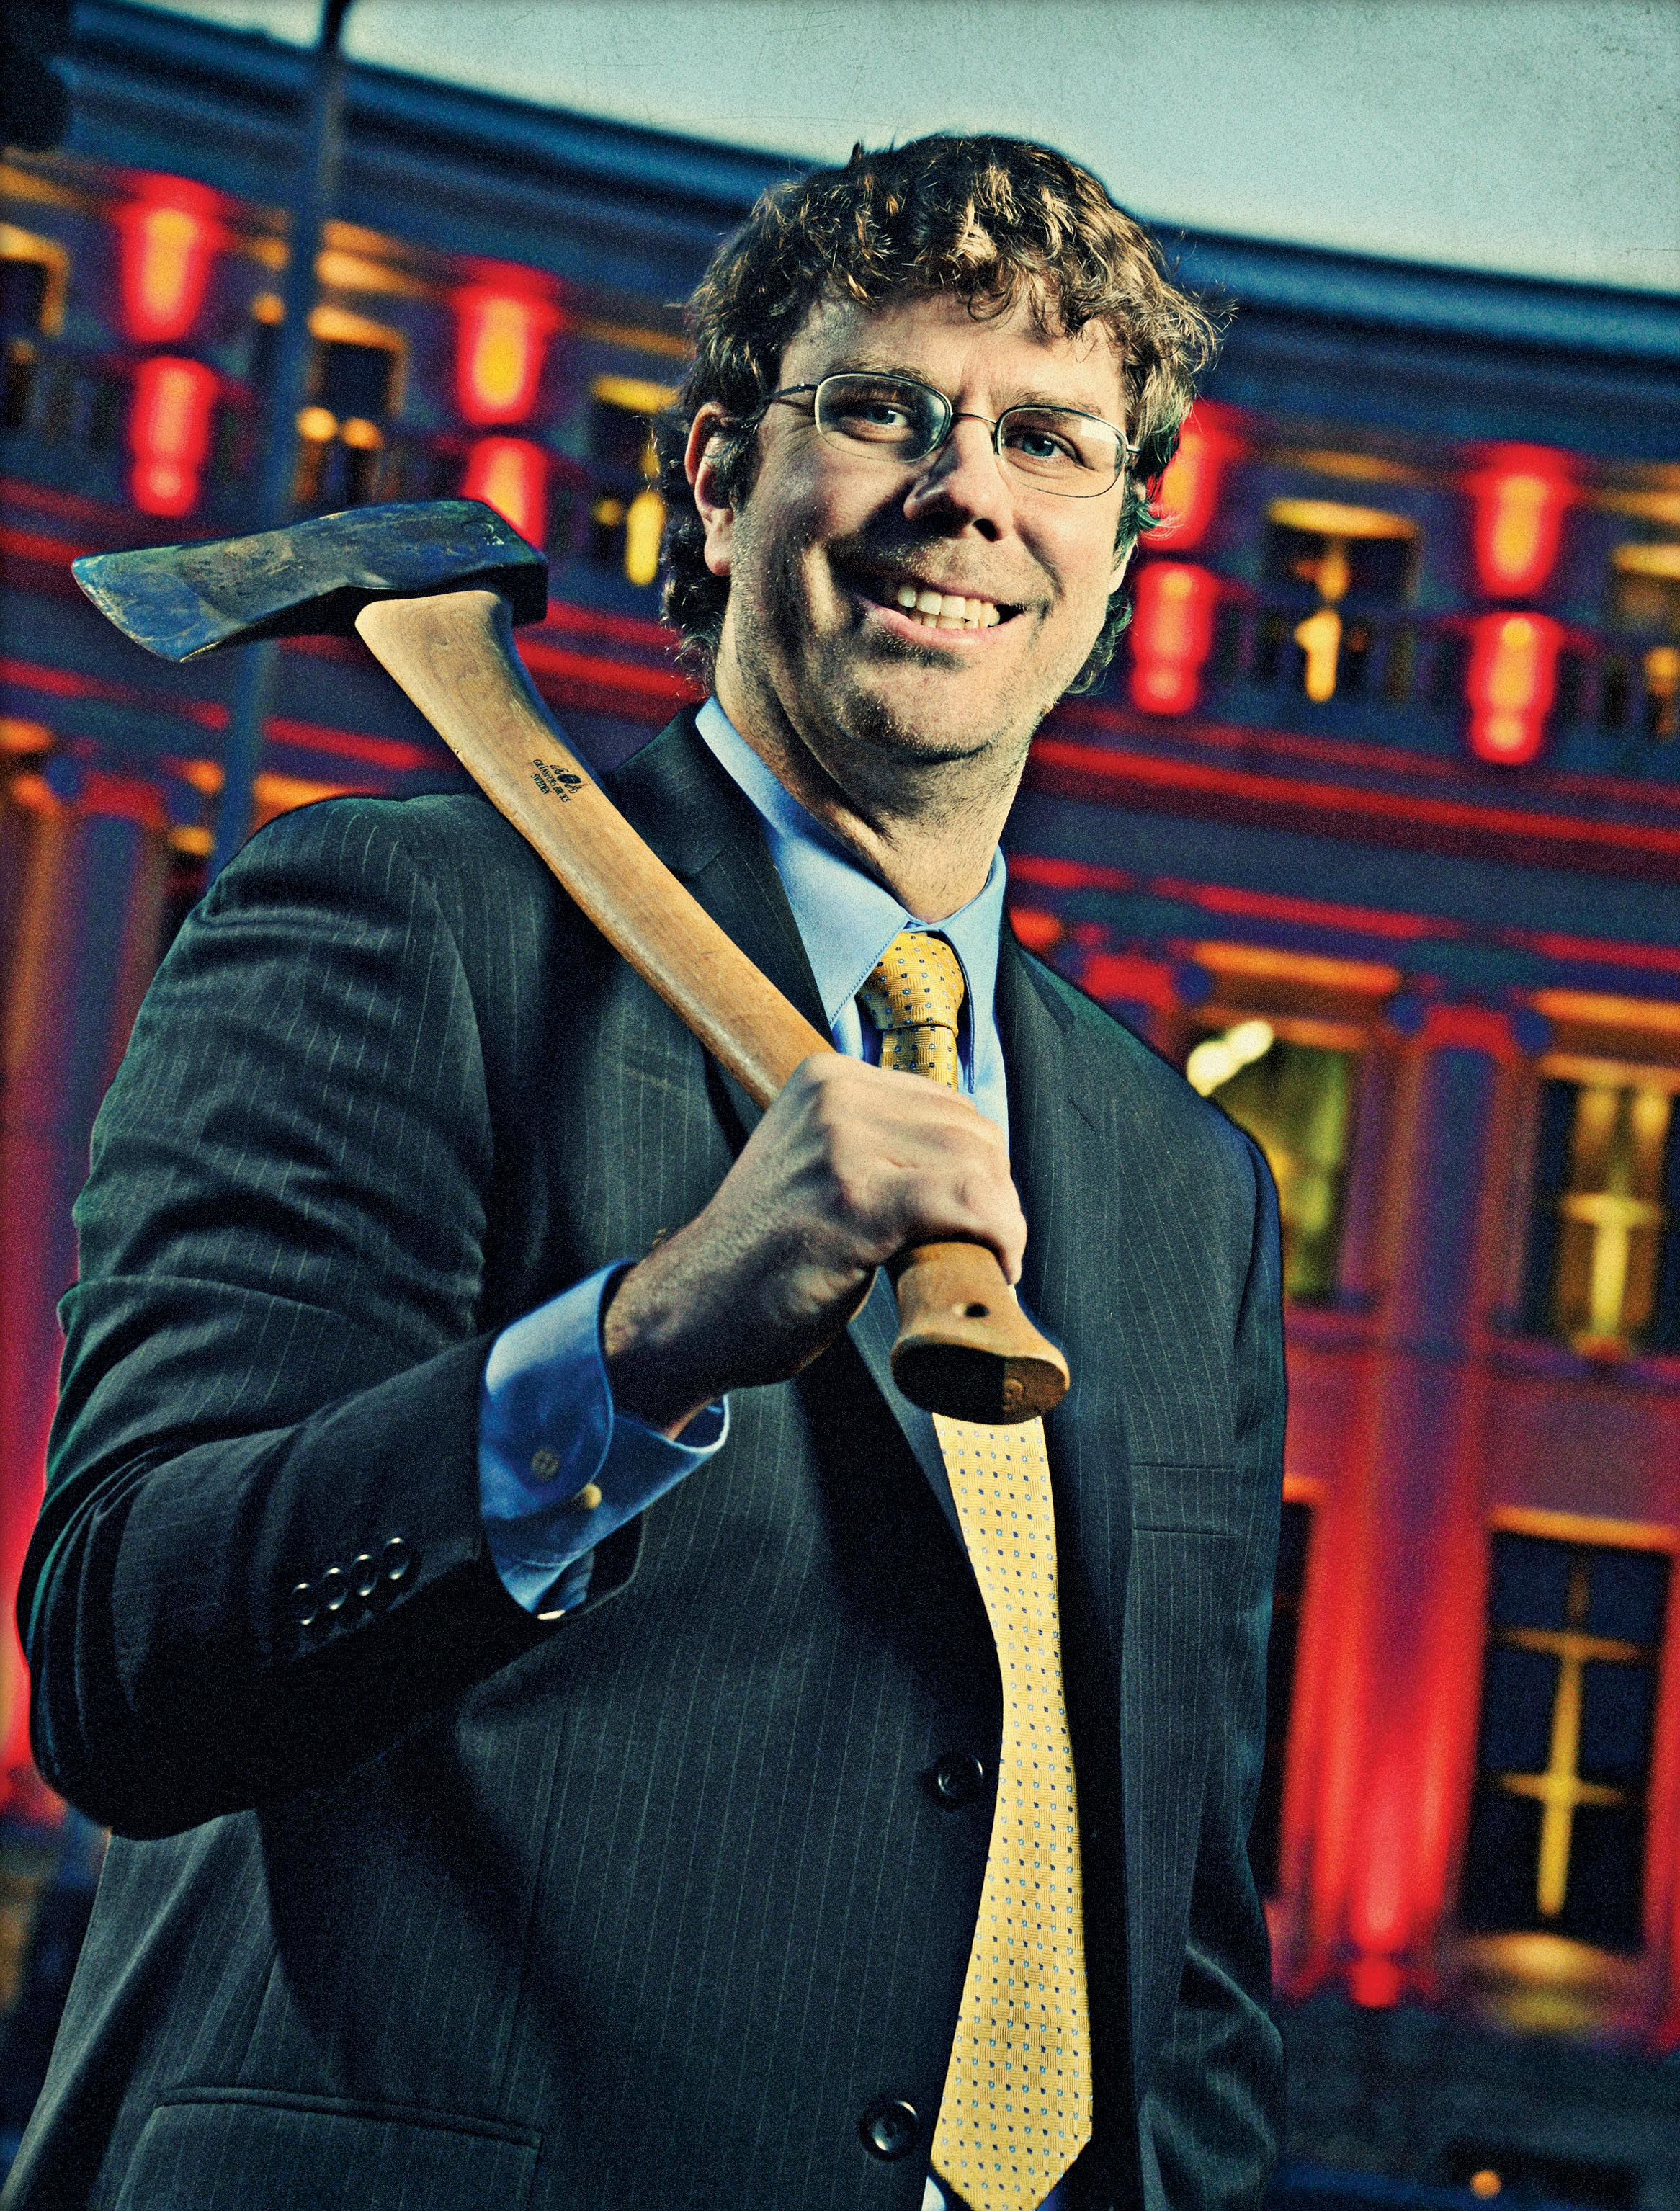 Scott Segerstrom with an axe